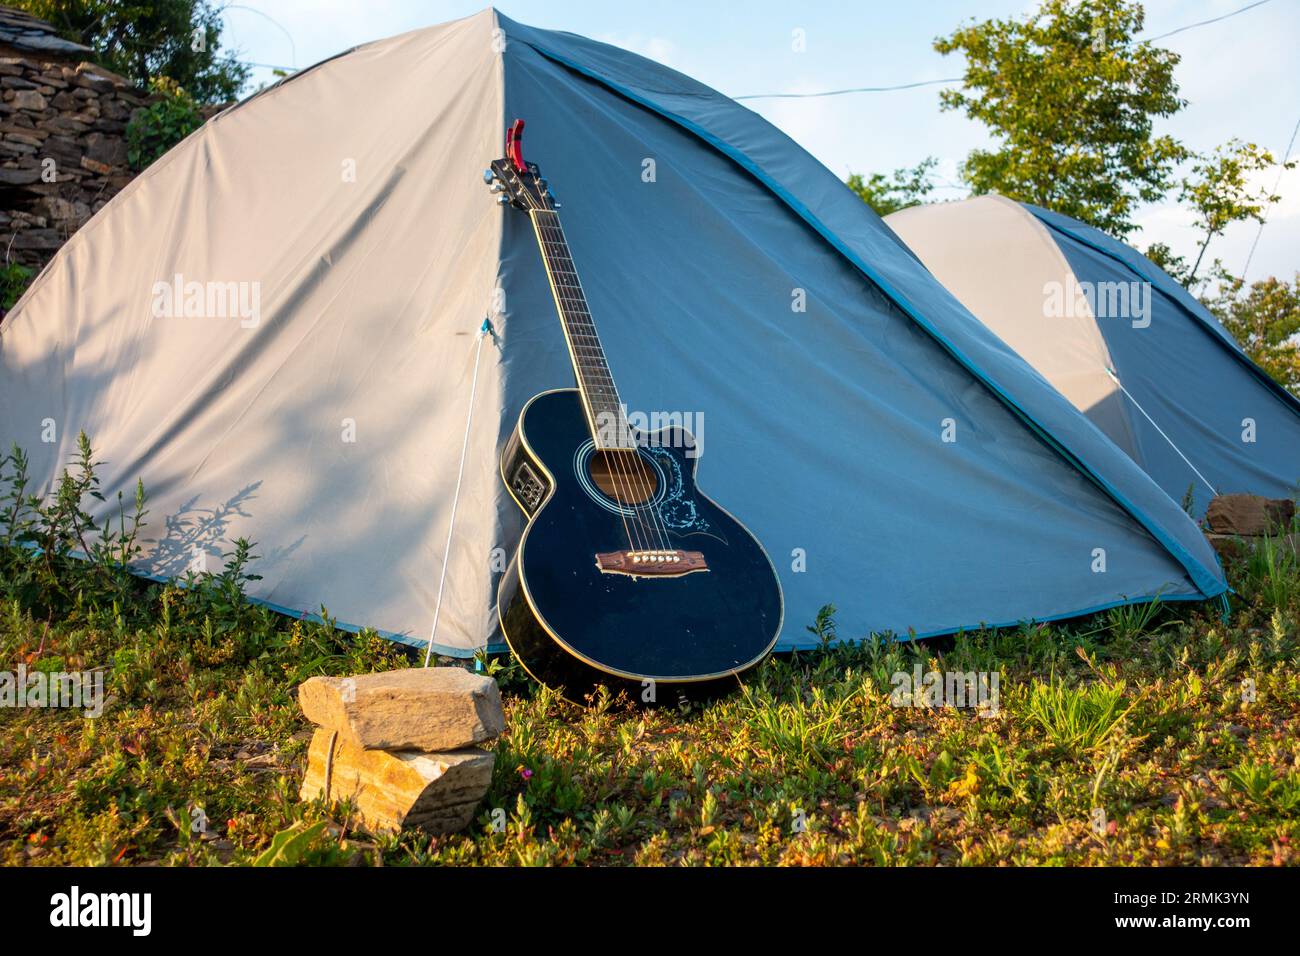 Campeggio Uttarakhand: Tende a cupola, chitarra acustica in mezzo all'abbraccio della natura. Perfetto rifugio in campeggio. Foto Stock